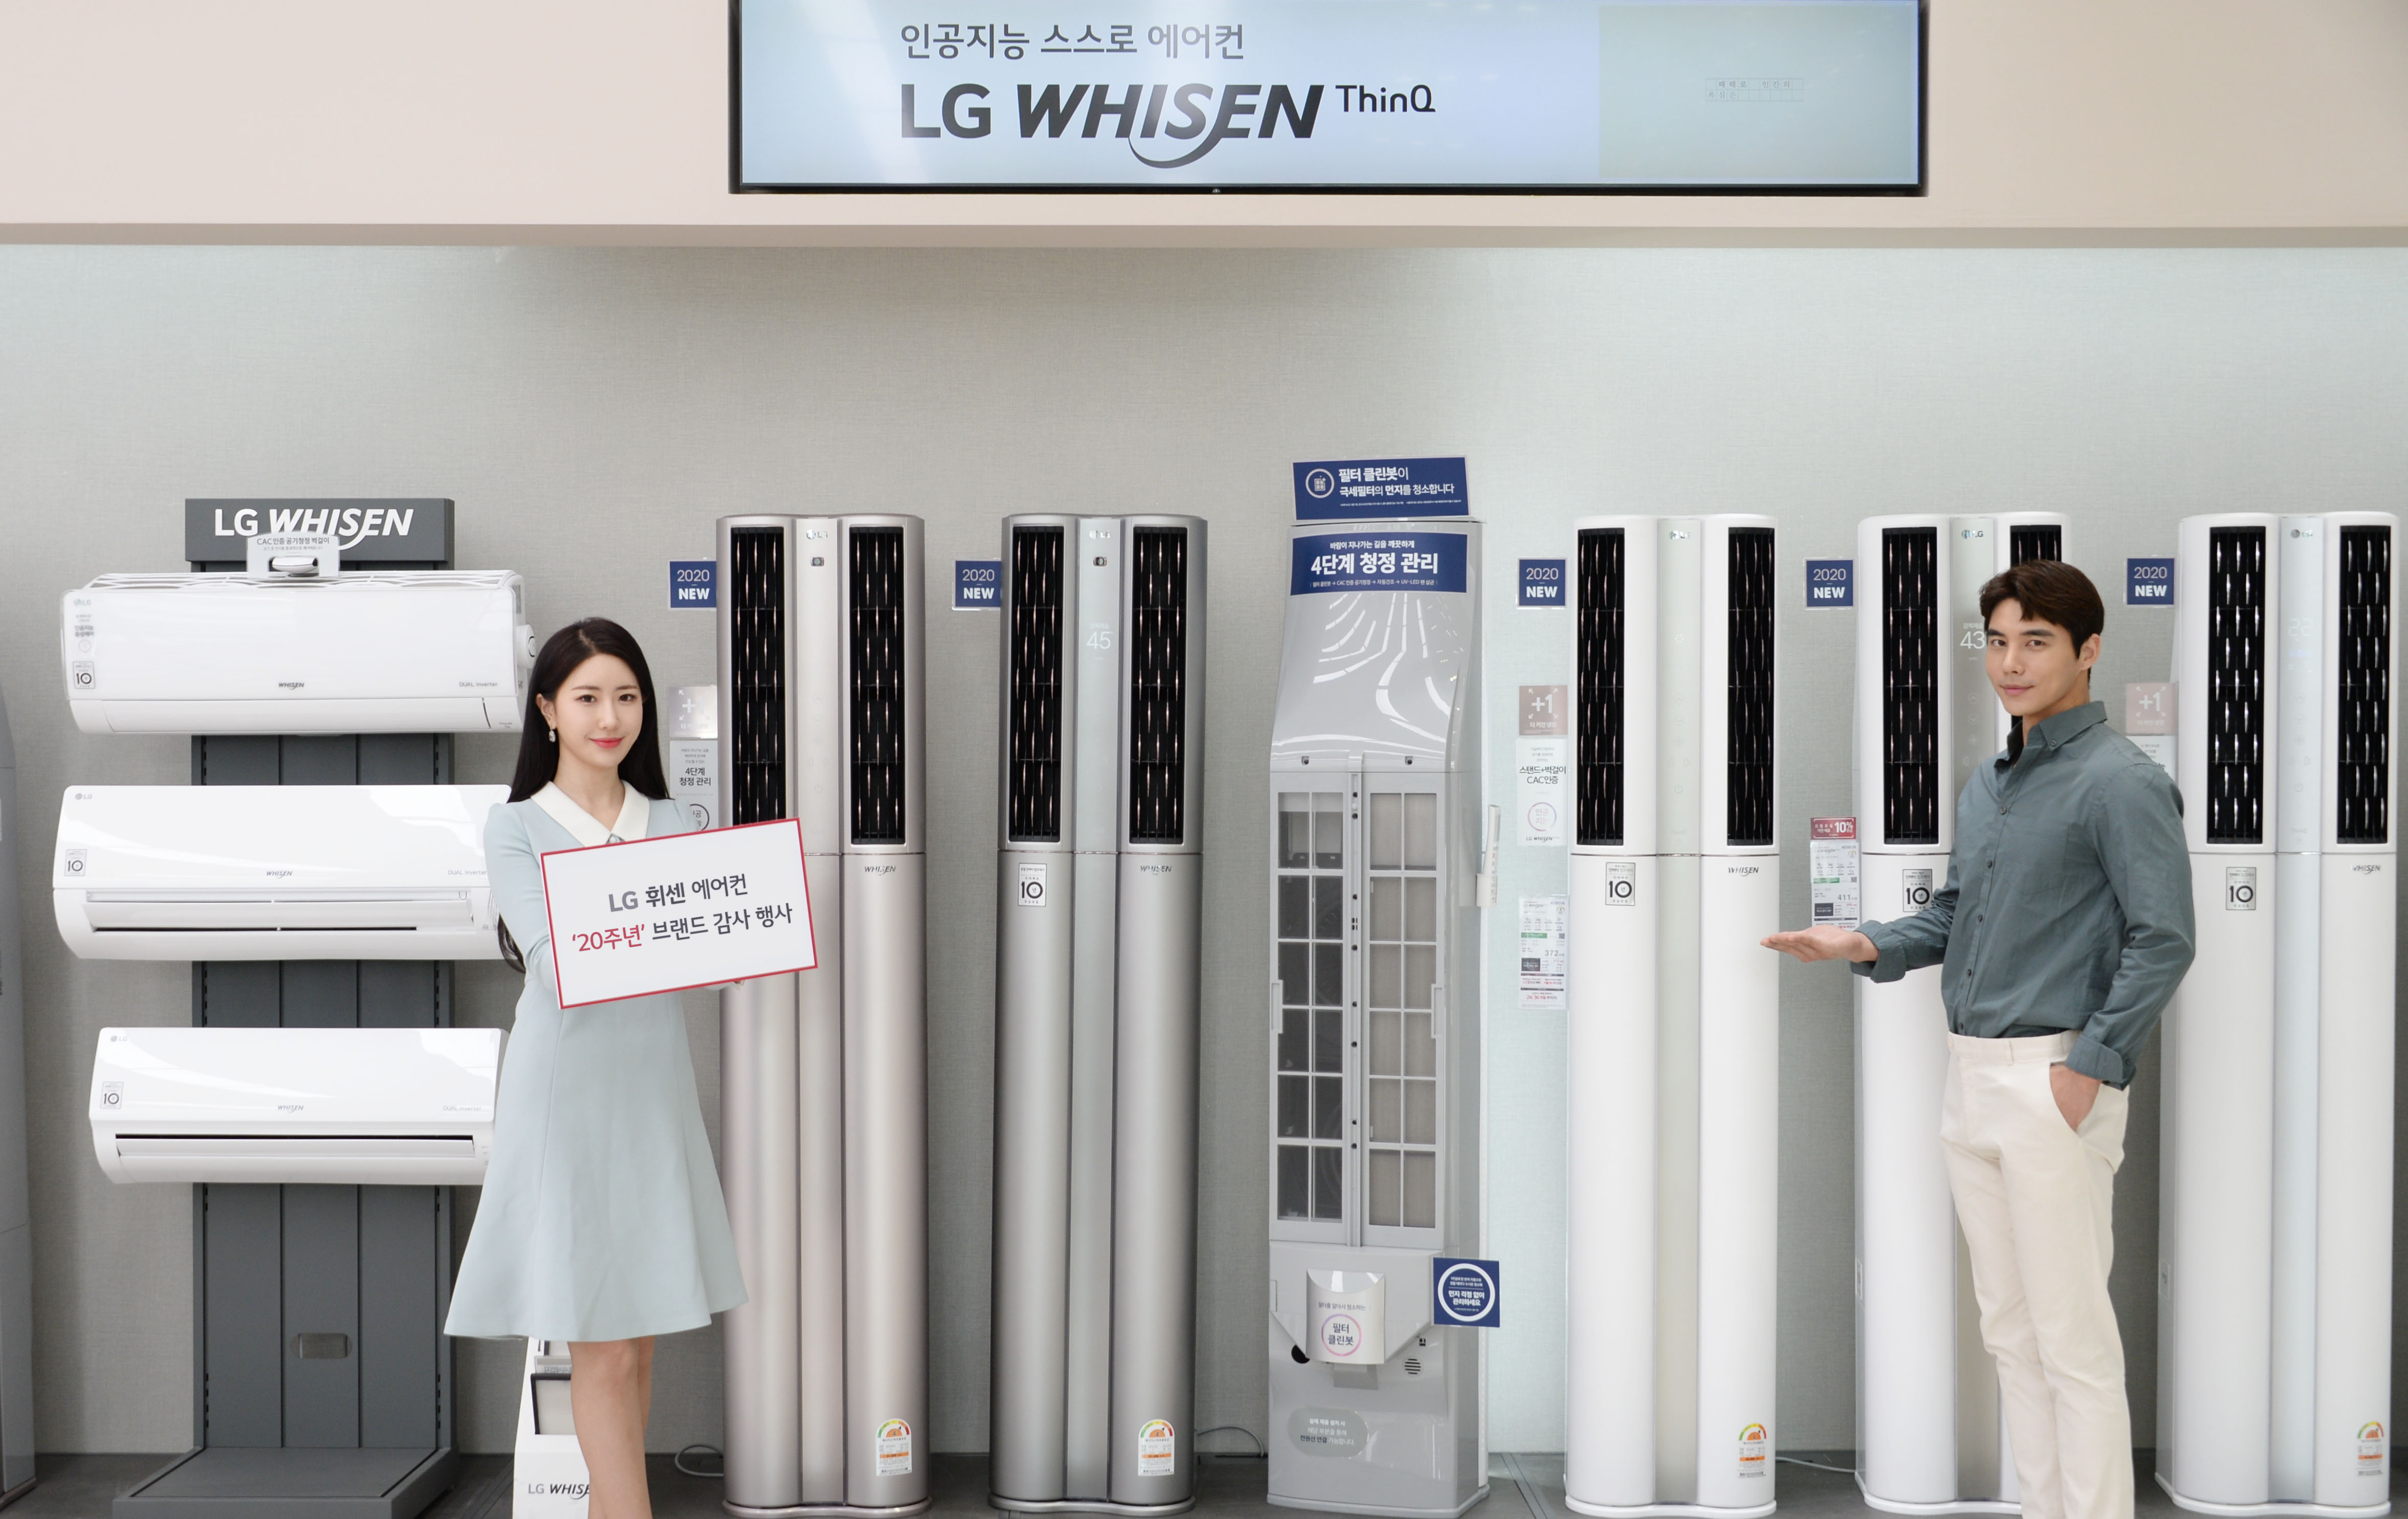 2020년형 LG 휘센 씽큐 에어컨을 구매하는 고객에게는 캐시백, 제품 업그레이드, 모바일 상품권 등 다양한 혜택을 주고 있다.  